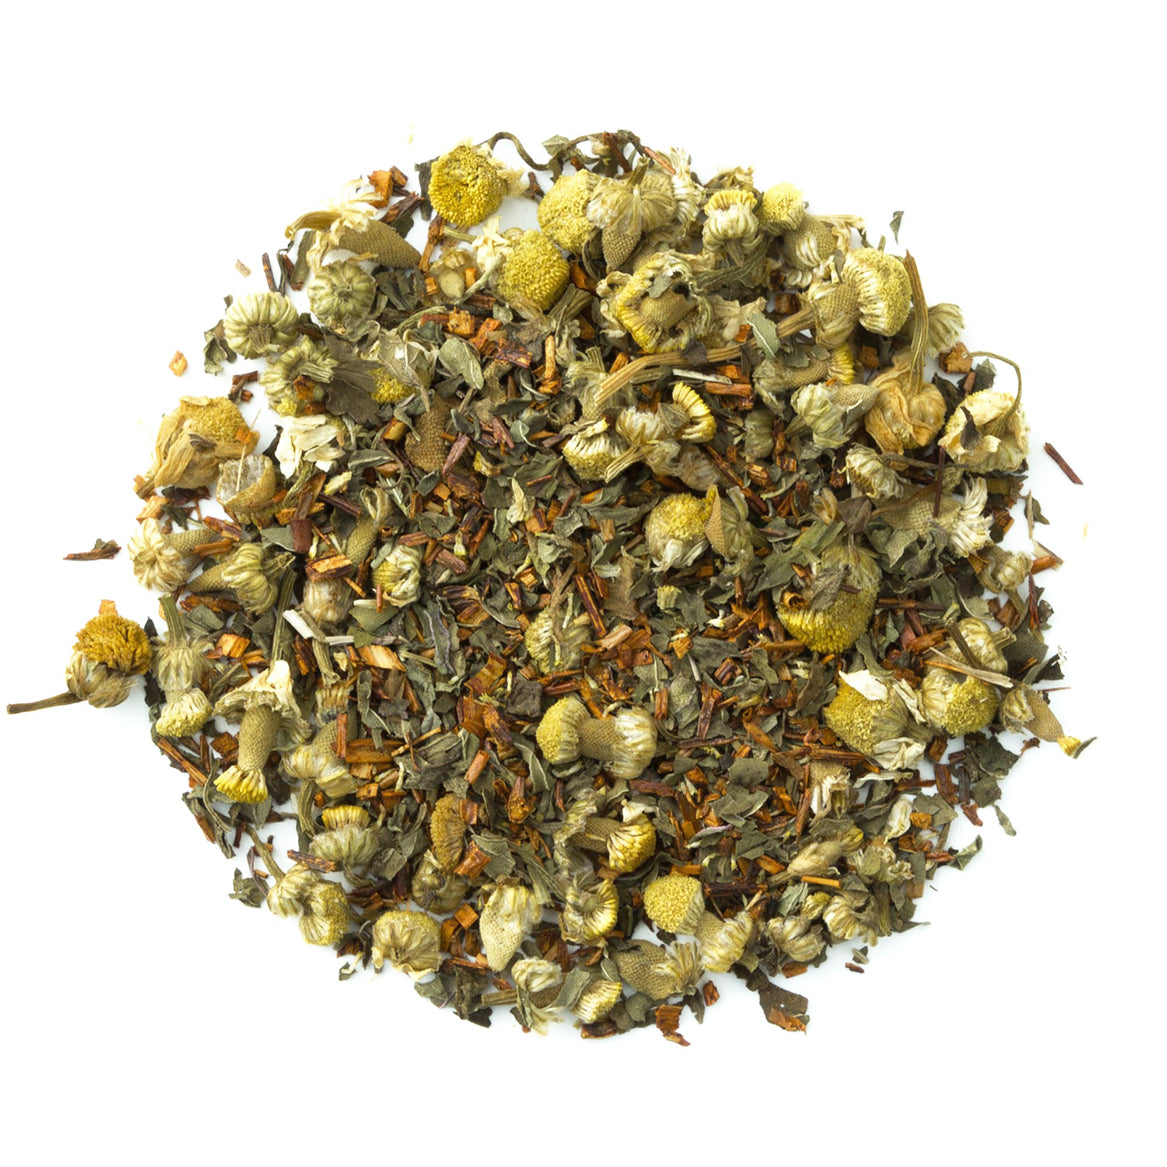 Organic Serenity - Loose Leaf Herbal Tea - Relaxing & Calming Herbal Tea - Naturally Caffeine Free | Heavenly Tea Leaves